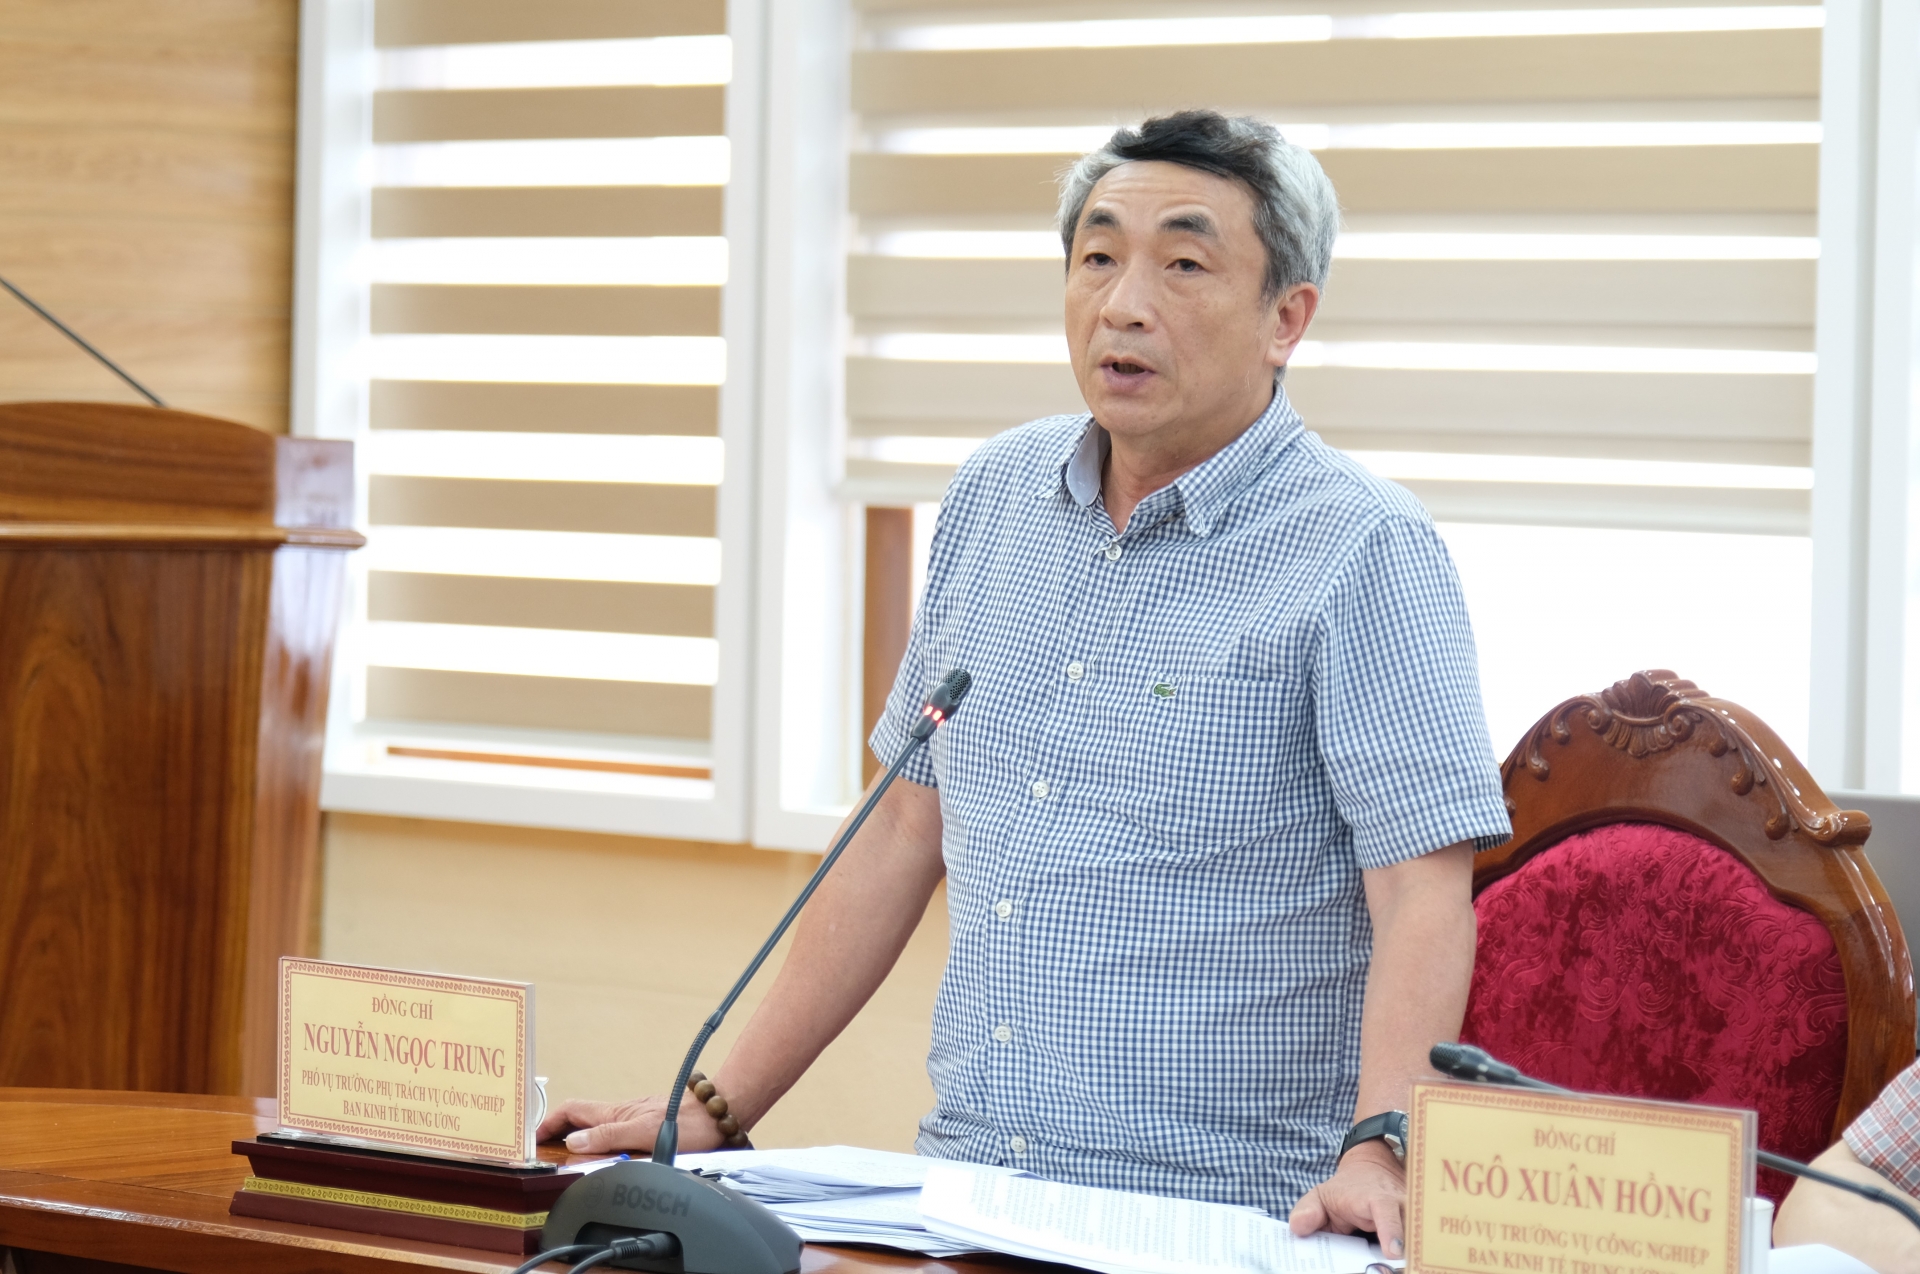 Đồng chí Nguyễn Ngọc Trung - Phó Vụ trưởng phục trách Vụ Công nghiệp, Ban Kinh tế Trung  ương đặt câu hỏi tại buổi làm việc